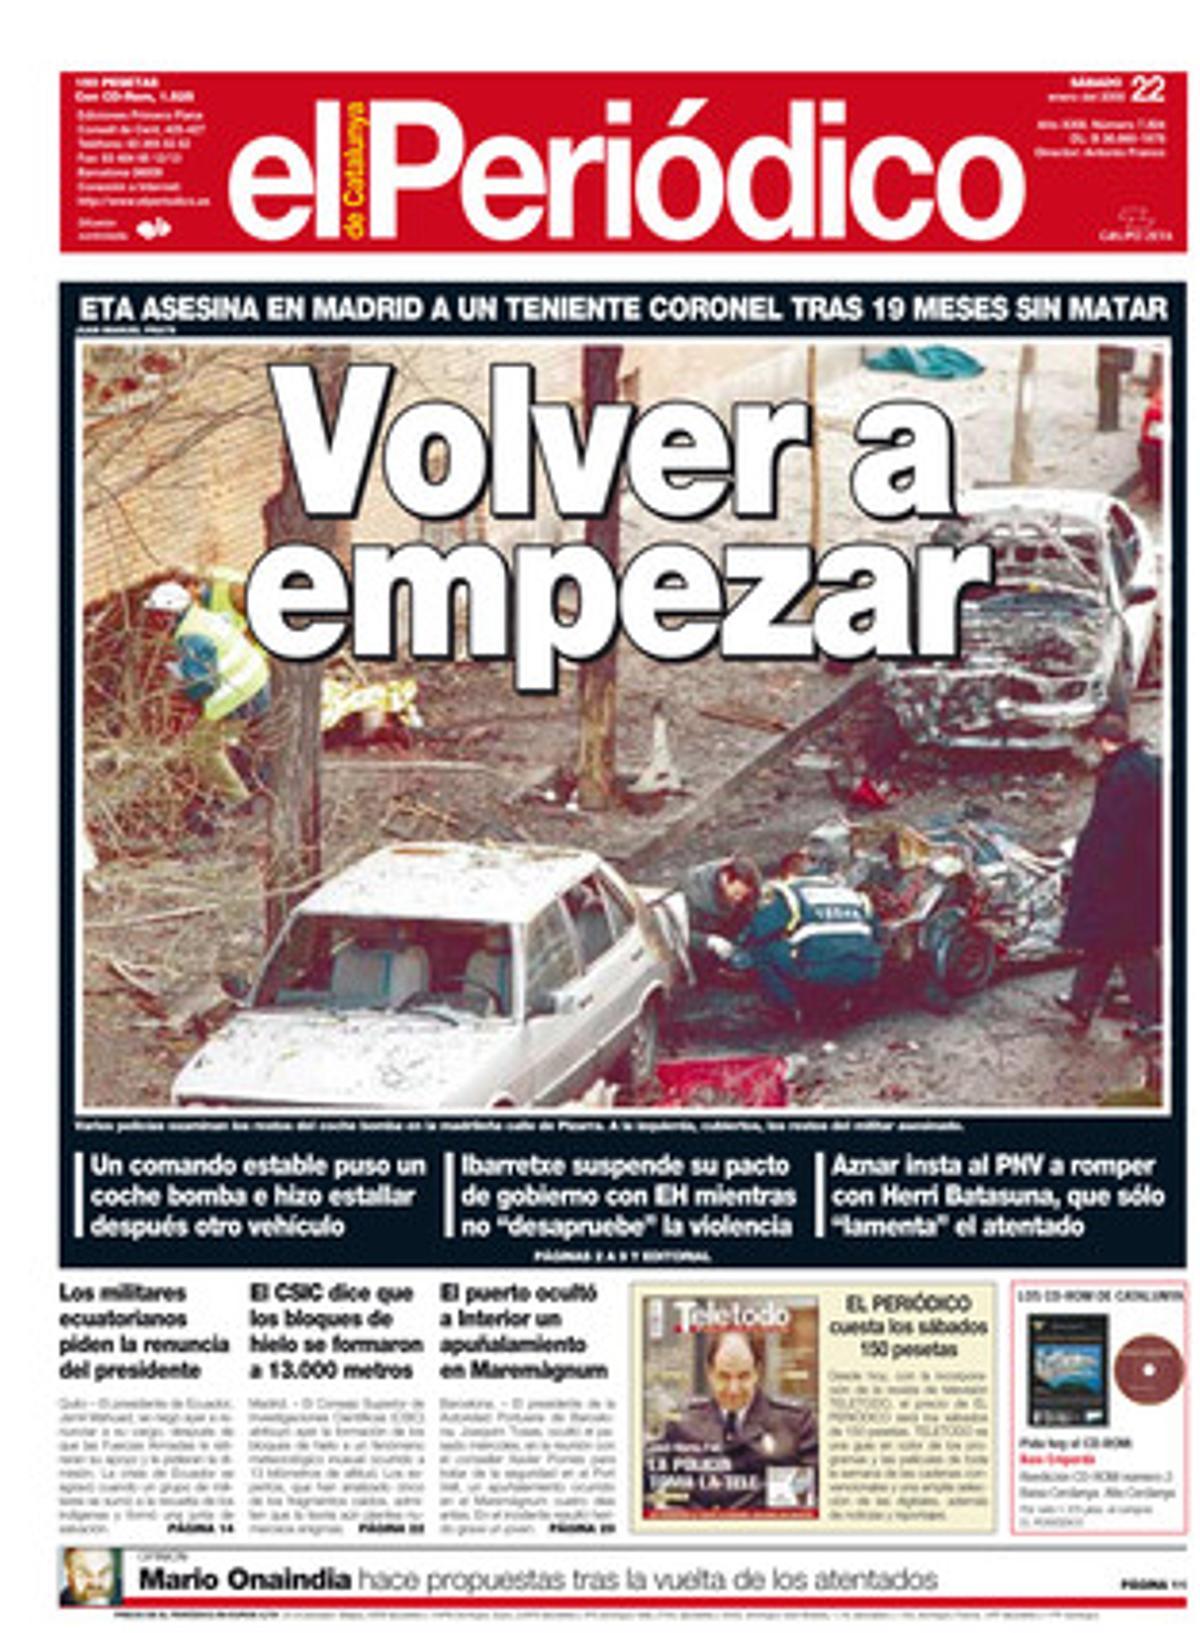 ETA rompe la tregua al asesinar en Madrid al coronel Blanco García. 22/1/2000